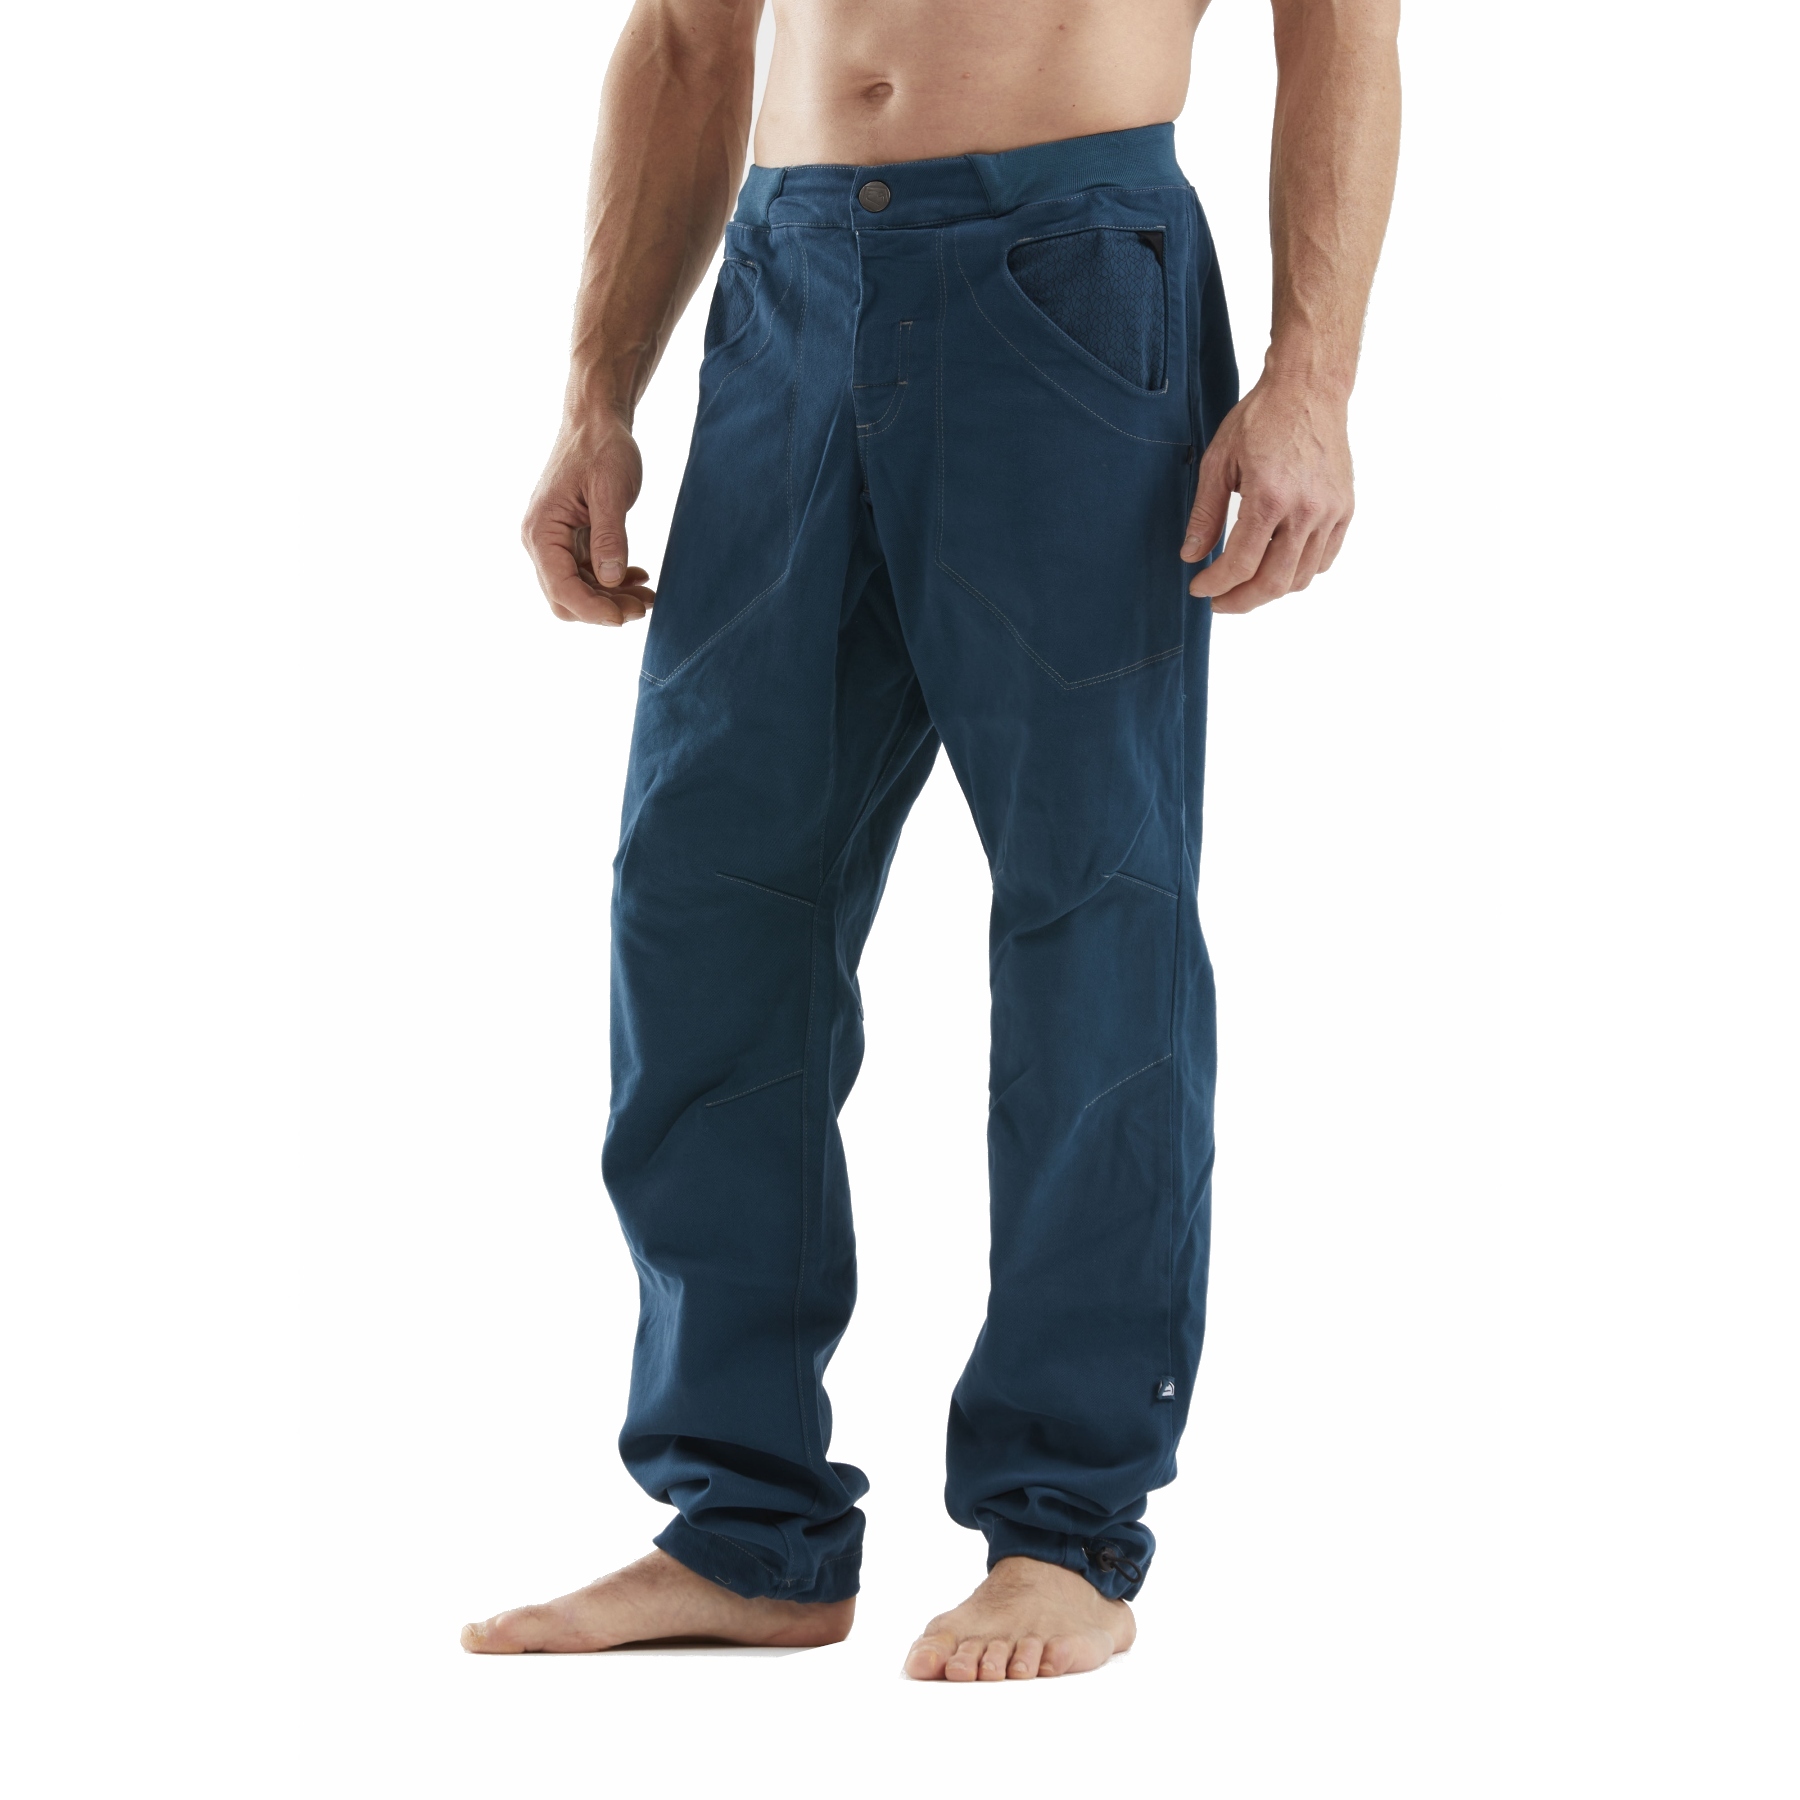 E9 Pantalon Escalade Homme - N 3Angolo2.2 - Caramel - BIKE24